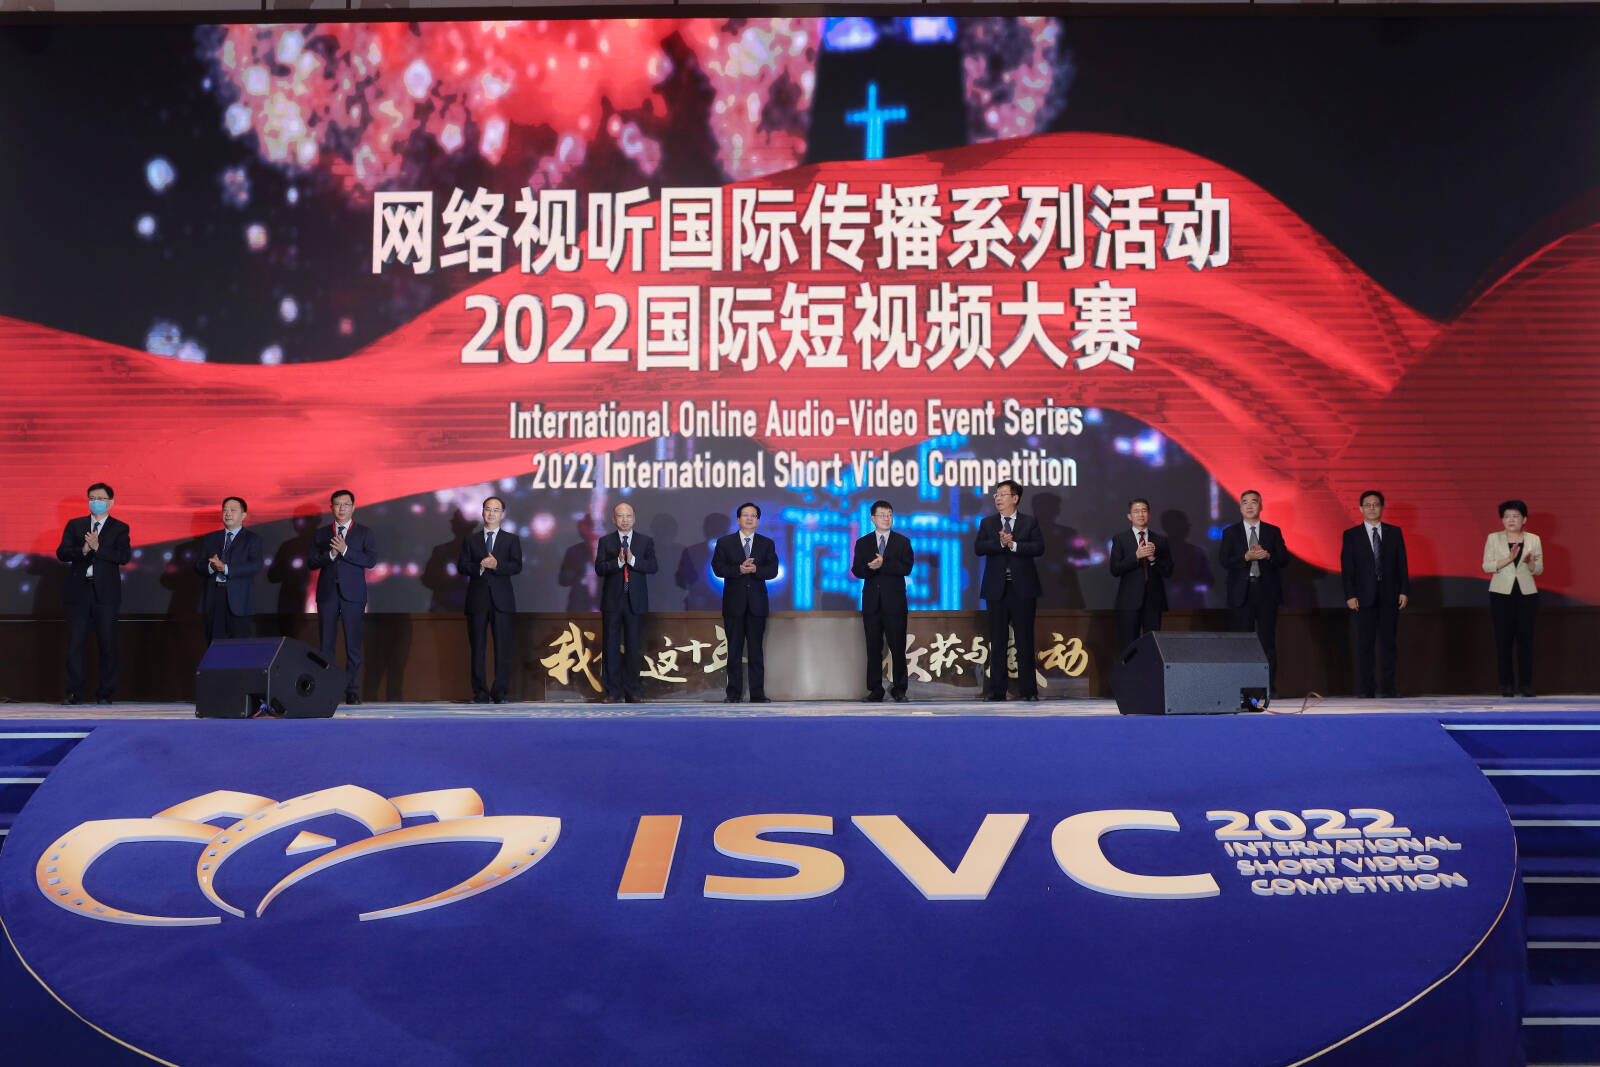 网络视听国际传播系列活动暨2022国际短视频大赛启动仪式在济南举行